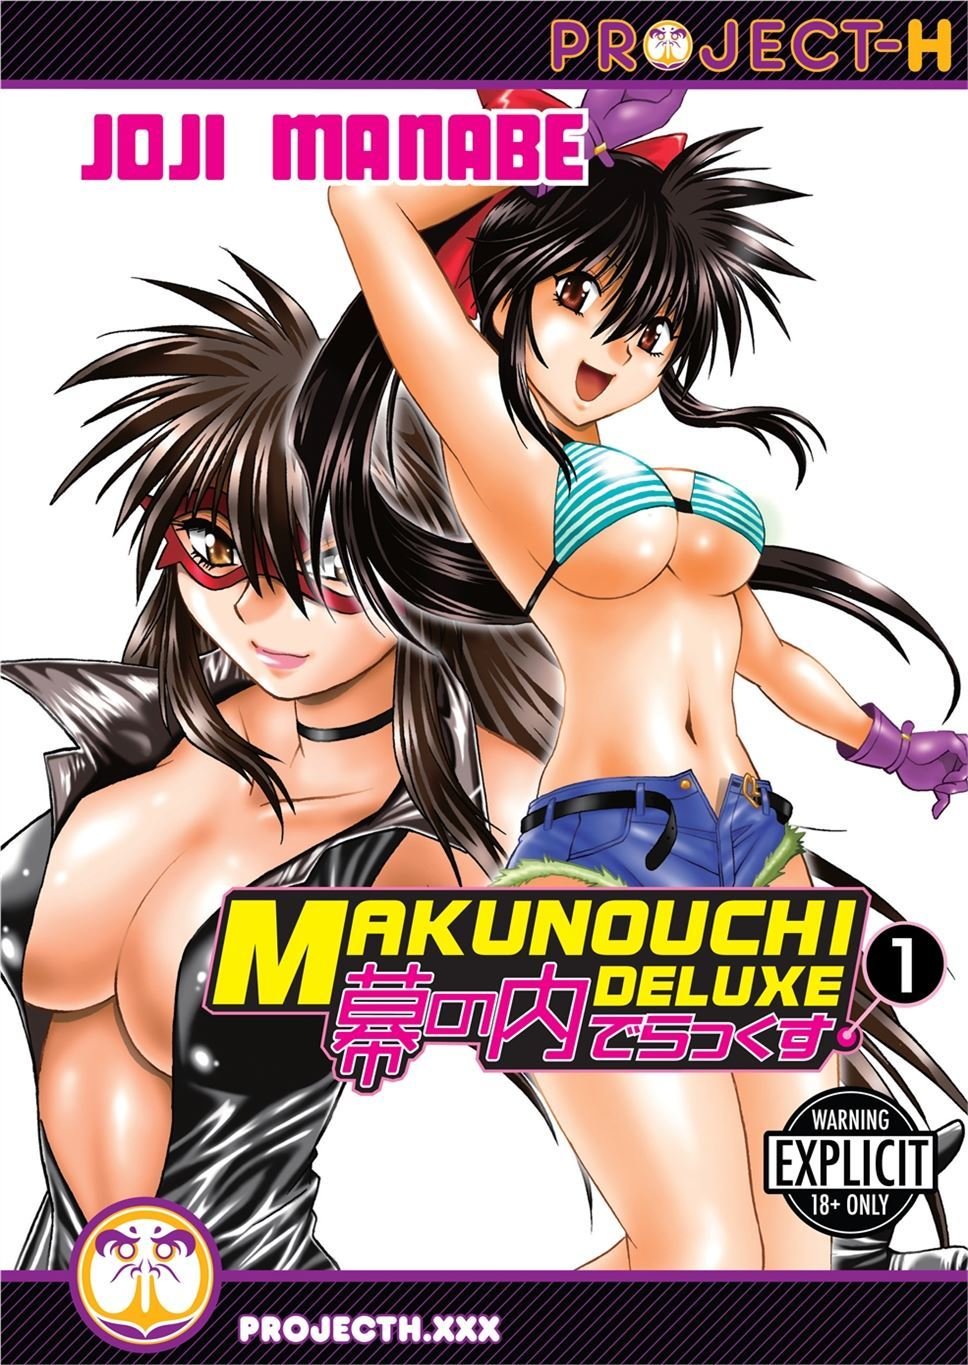 Makunouchi Deluxe Vol. 1